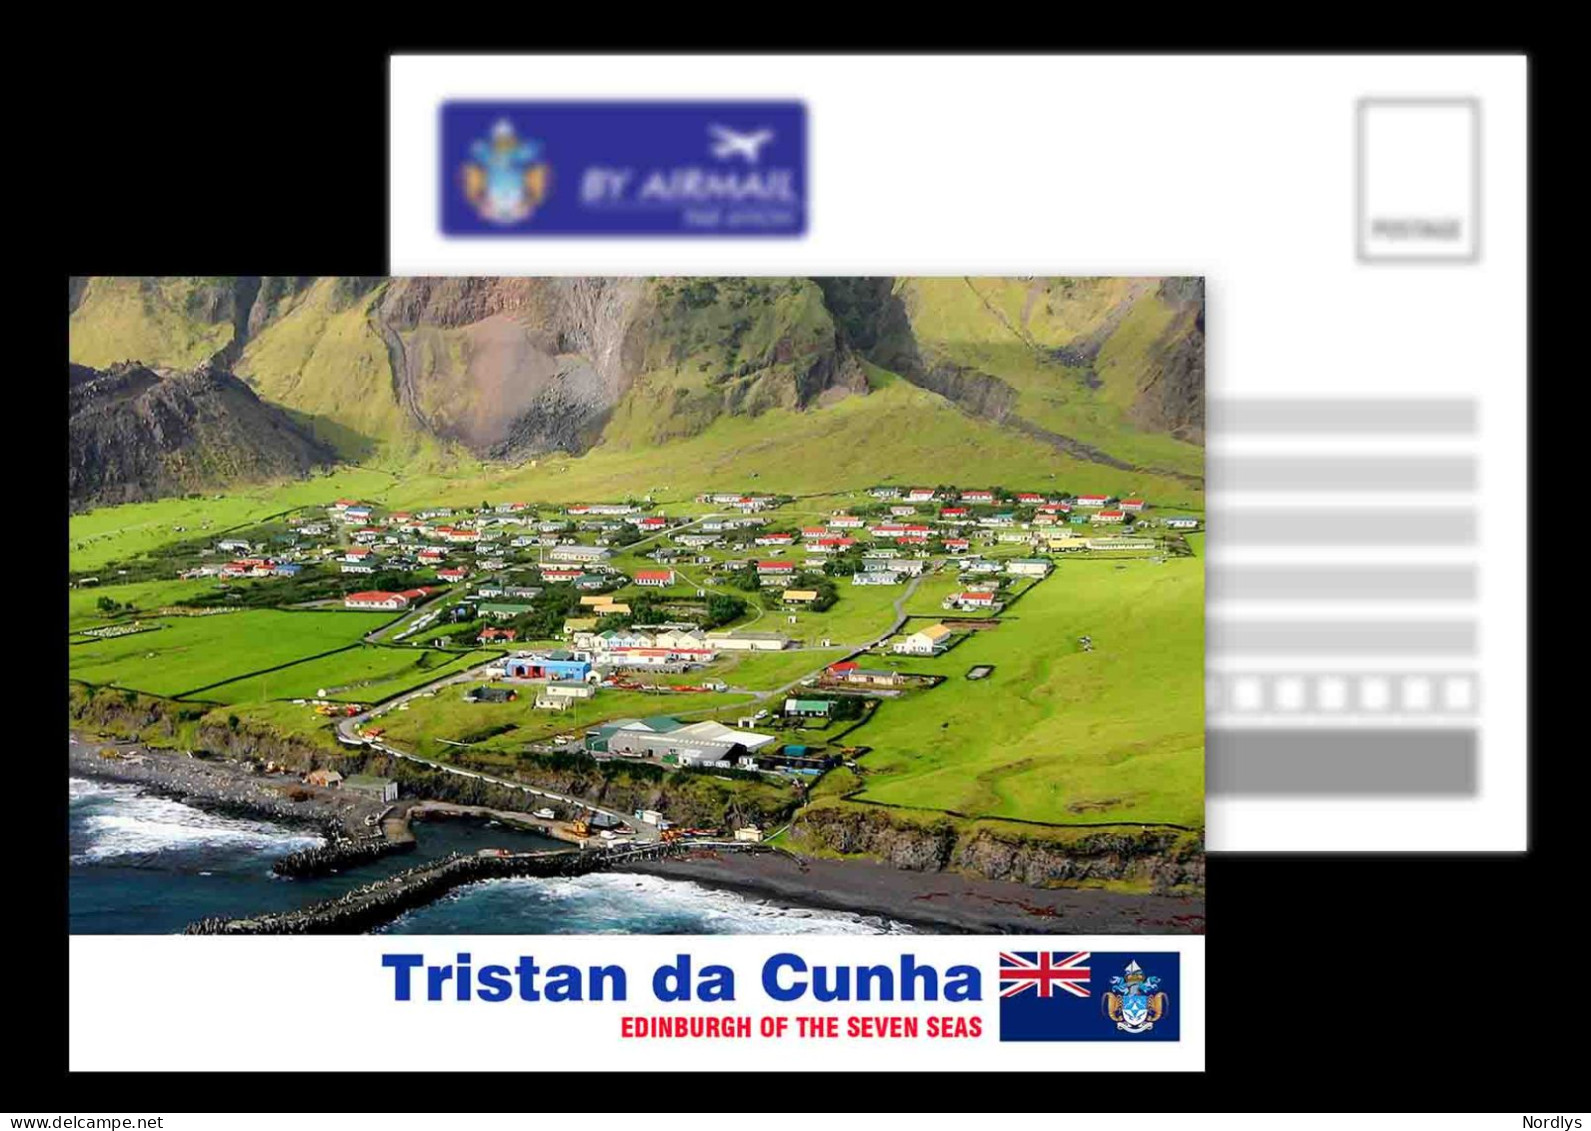 Tristan Da Cunha / Postcard / View Card - St. Helena